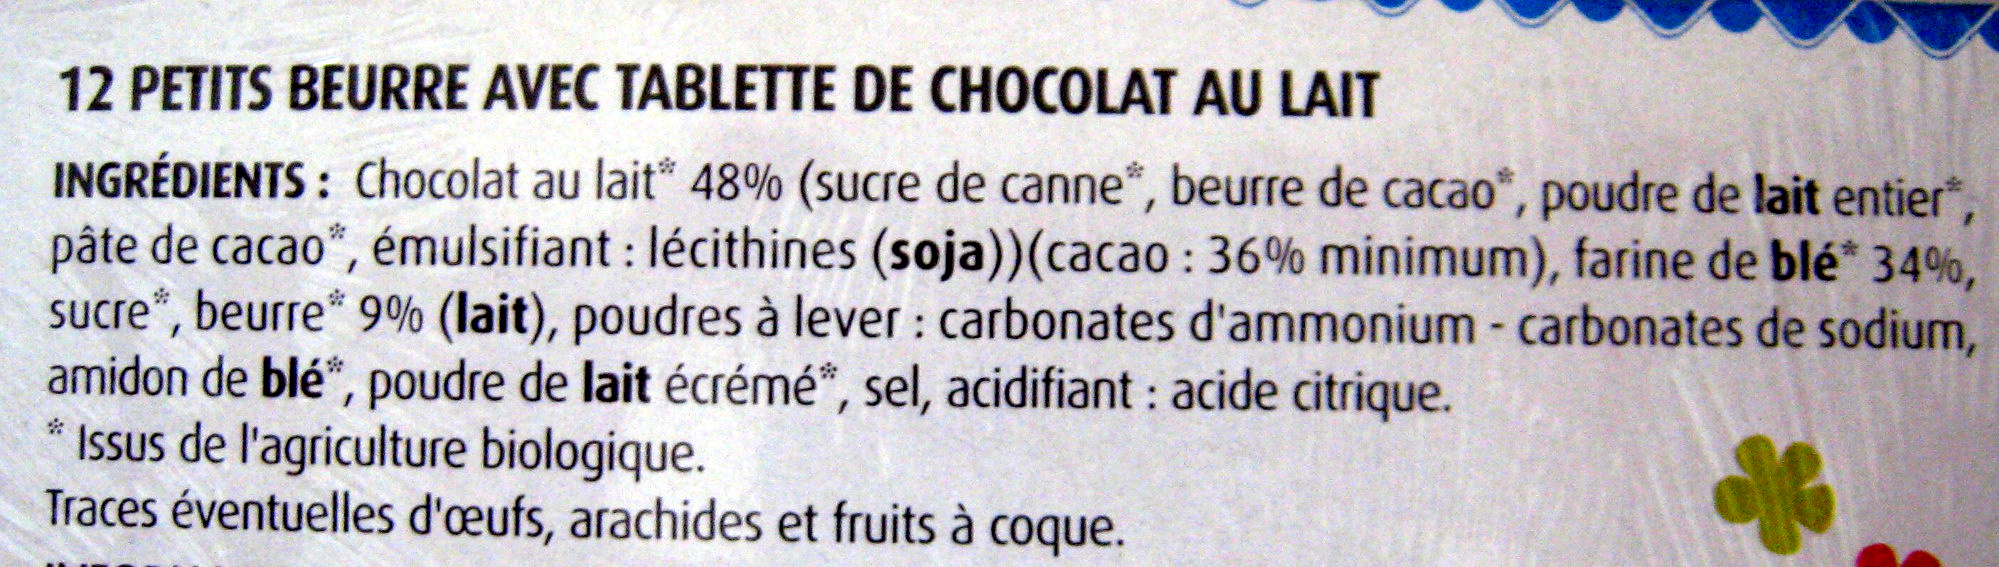 Petit Beurre avec tablette de chocolat au lait BIO (lot de 2) - Ingrédients